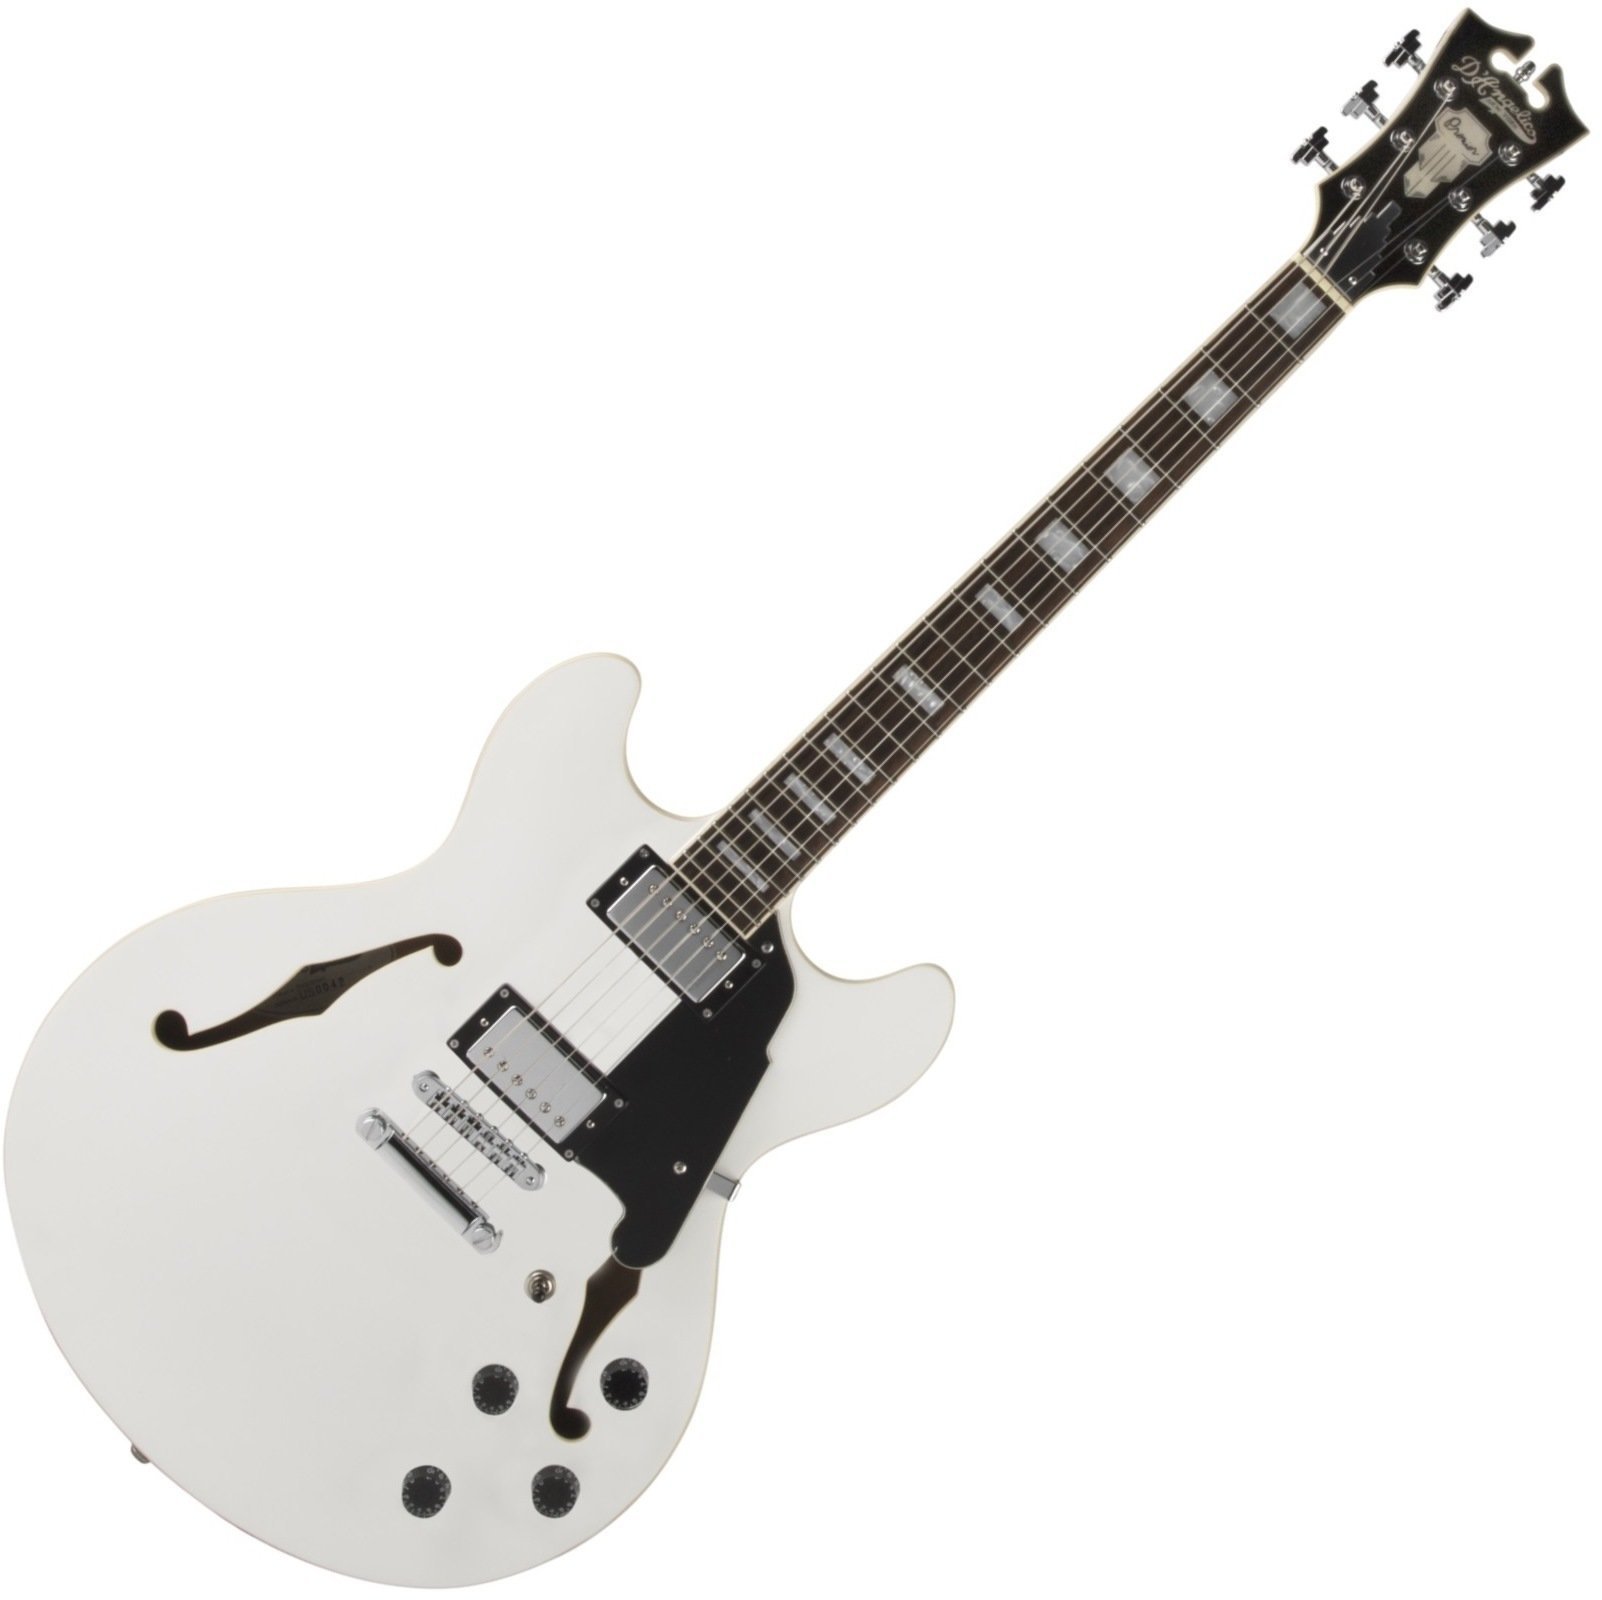 Halvakustisk guitar D'Angelico Premier DC Stop-bar hvid